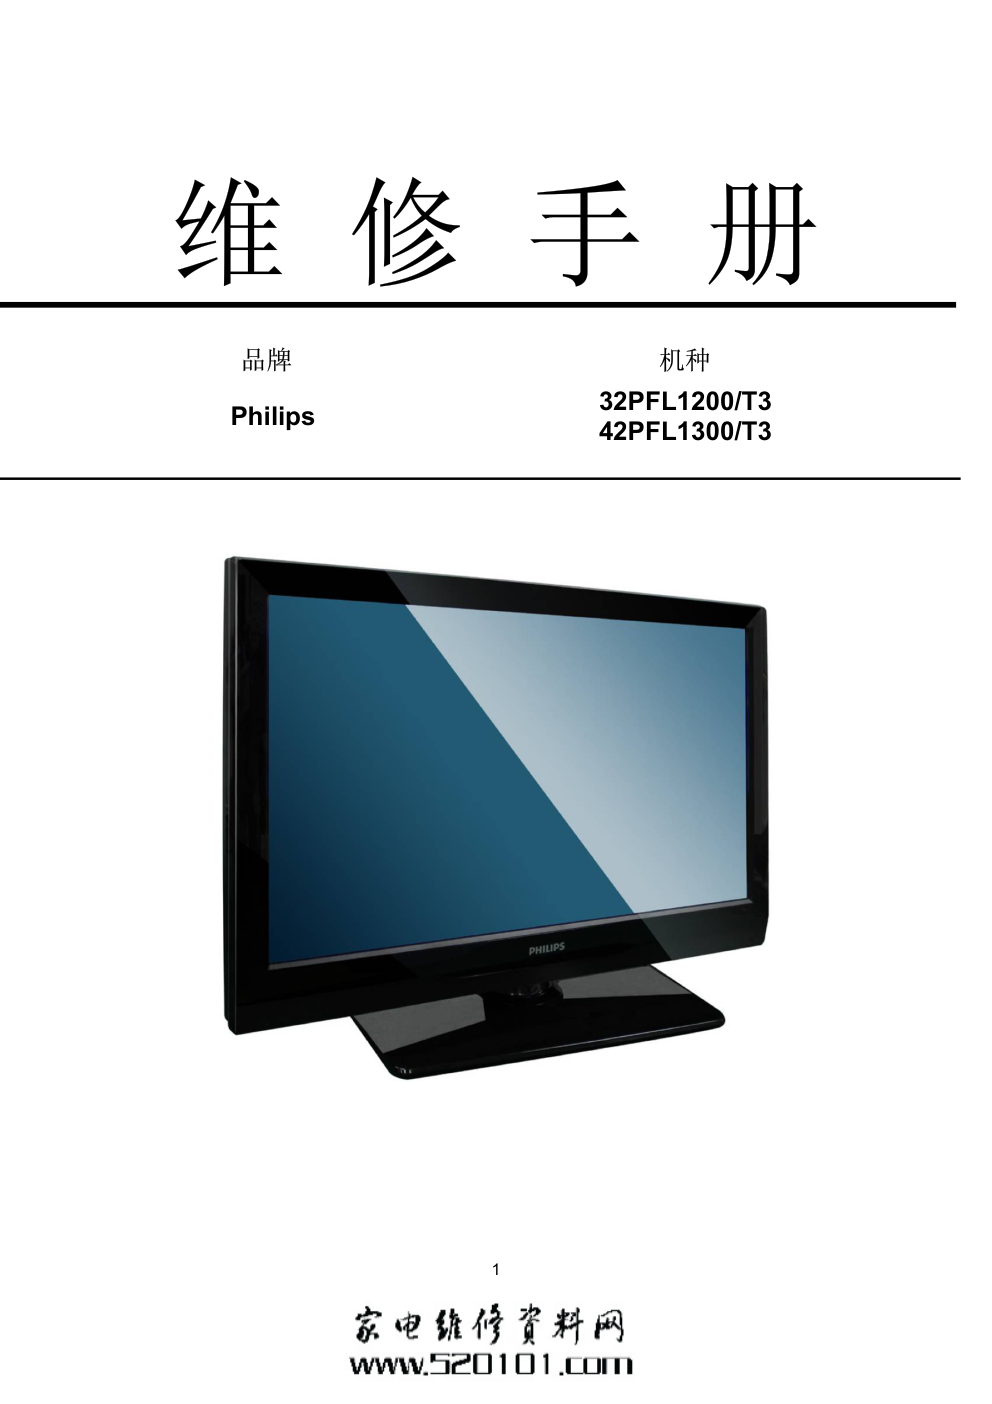 飞利浦42PFL1300T3 液晶电视维修手册-0